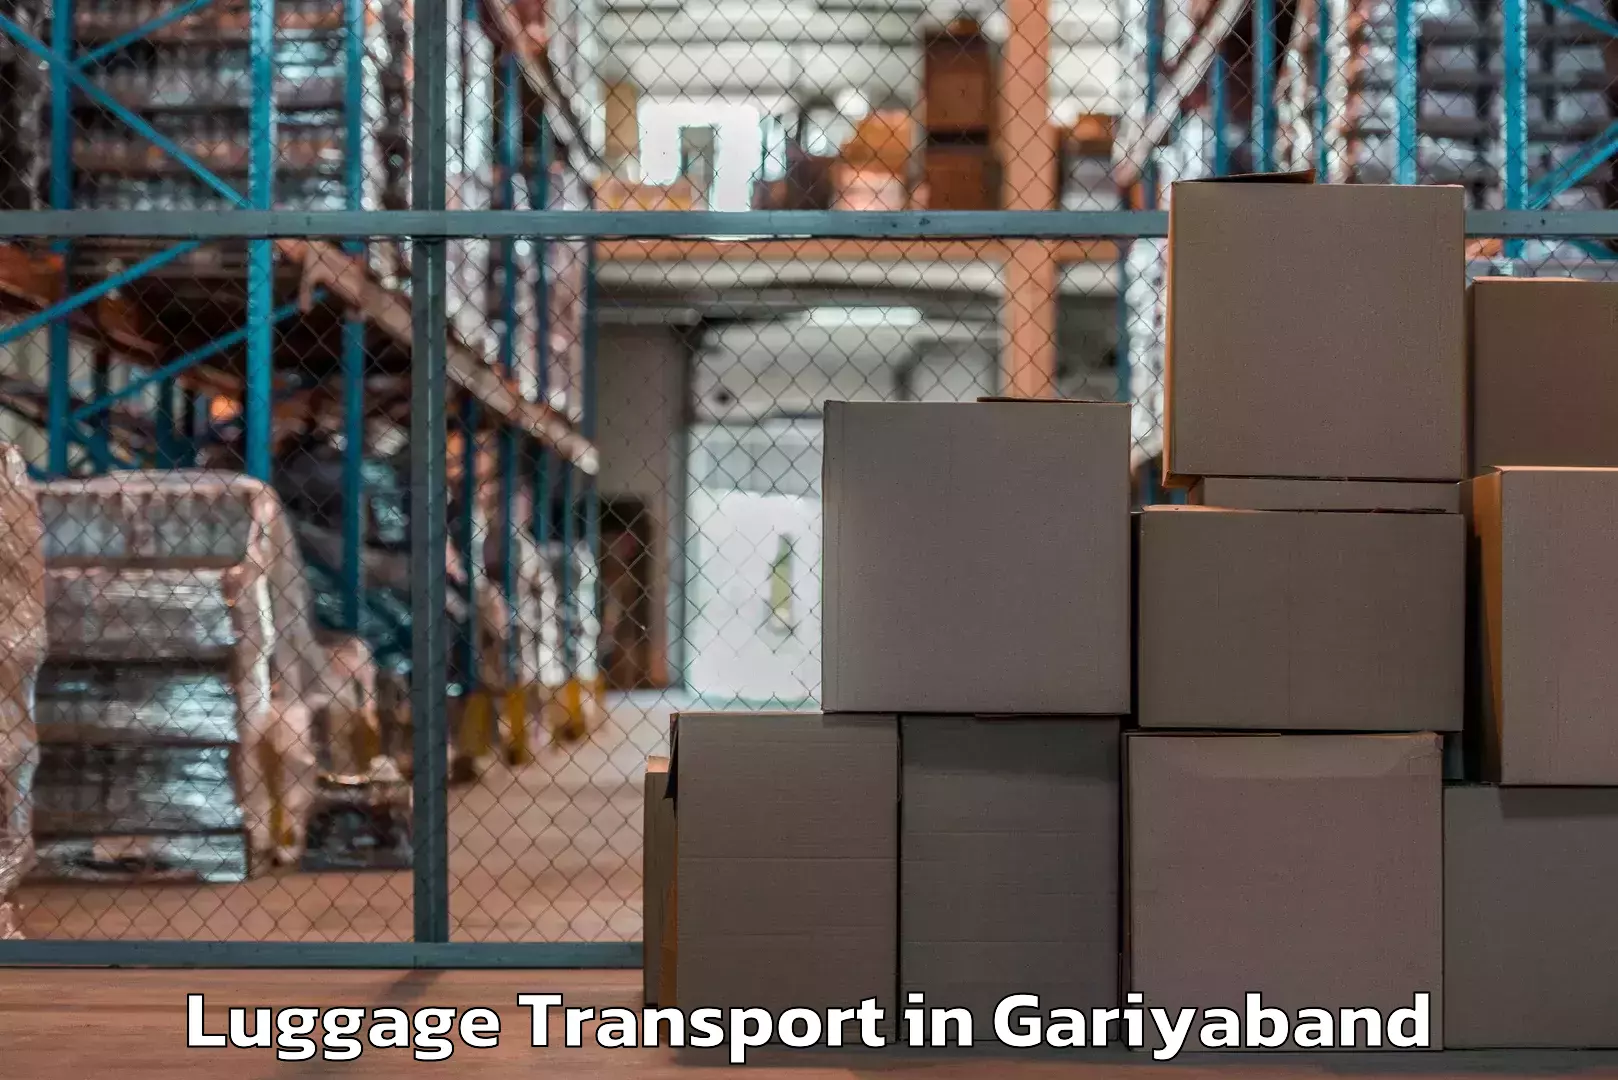 Automated luggage transport in Gariyaband